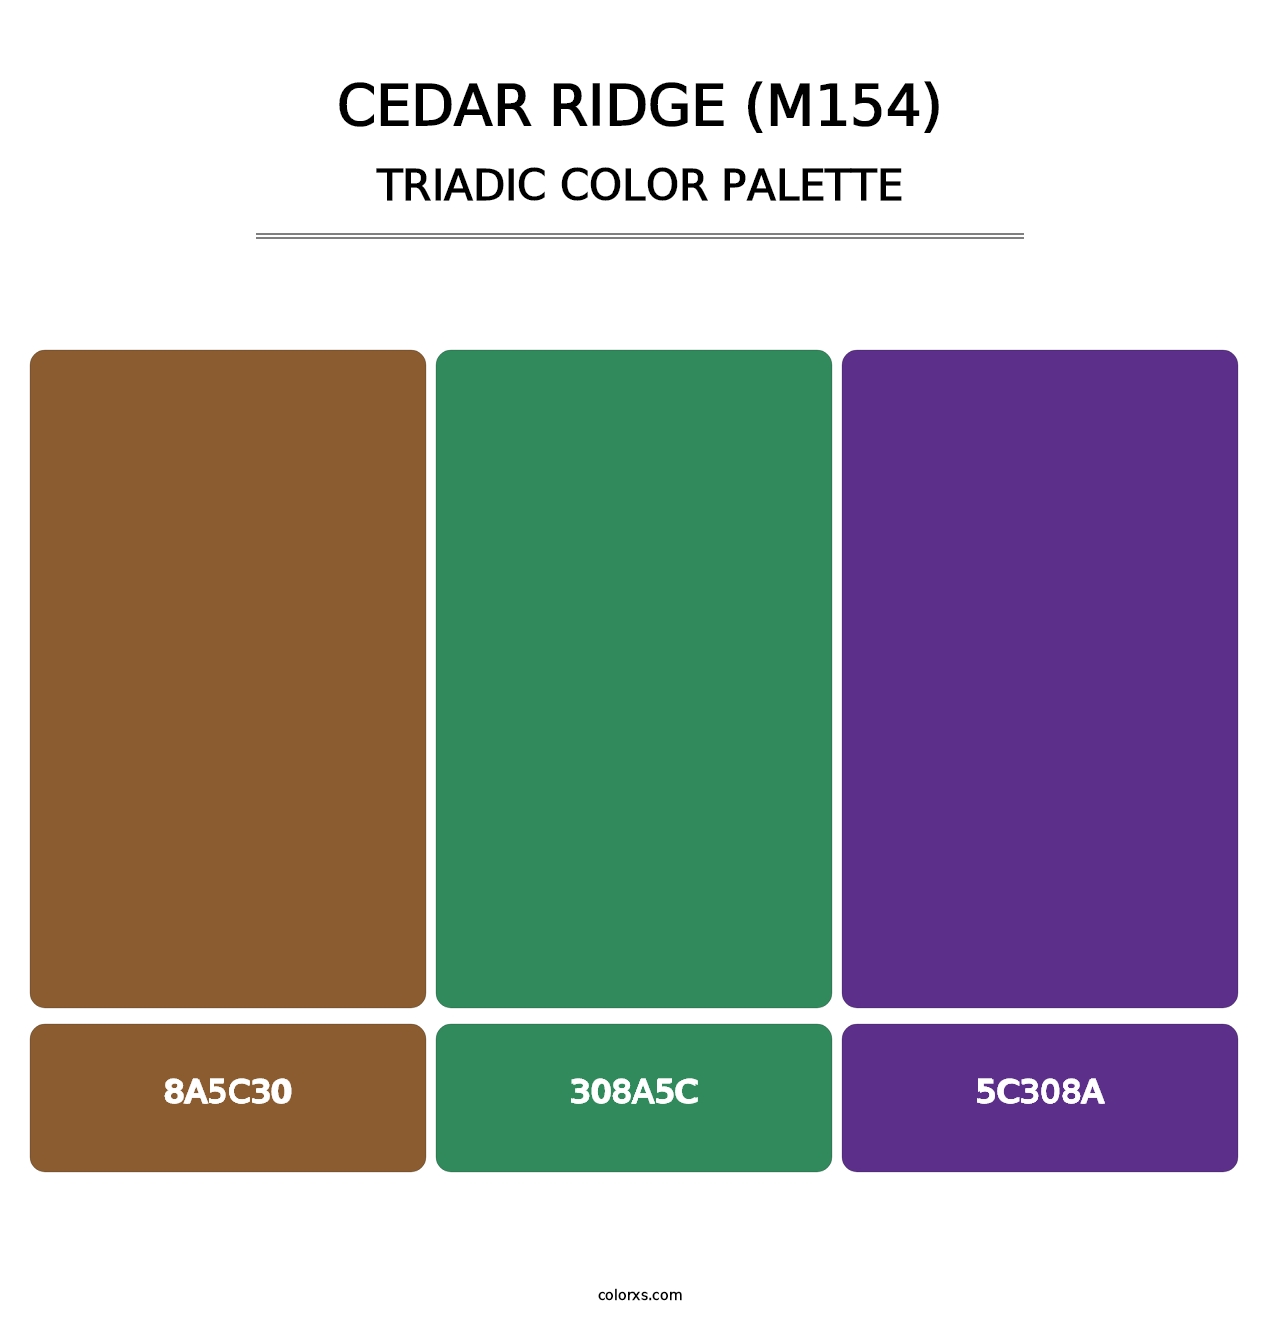 Cedar Ridge (M154) - Triadic Color Palette